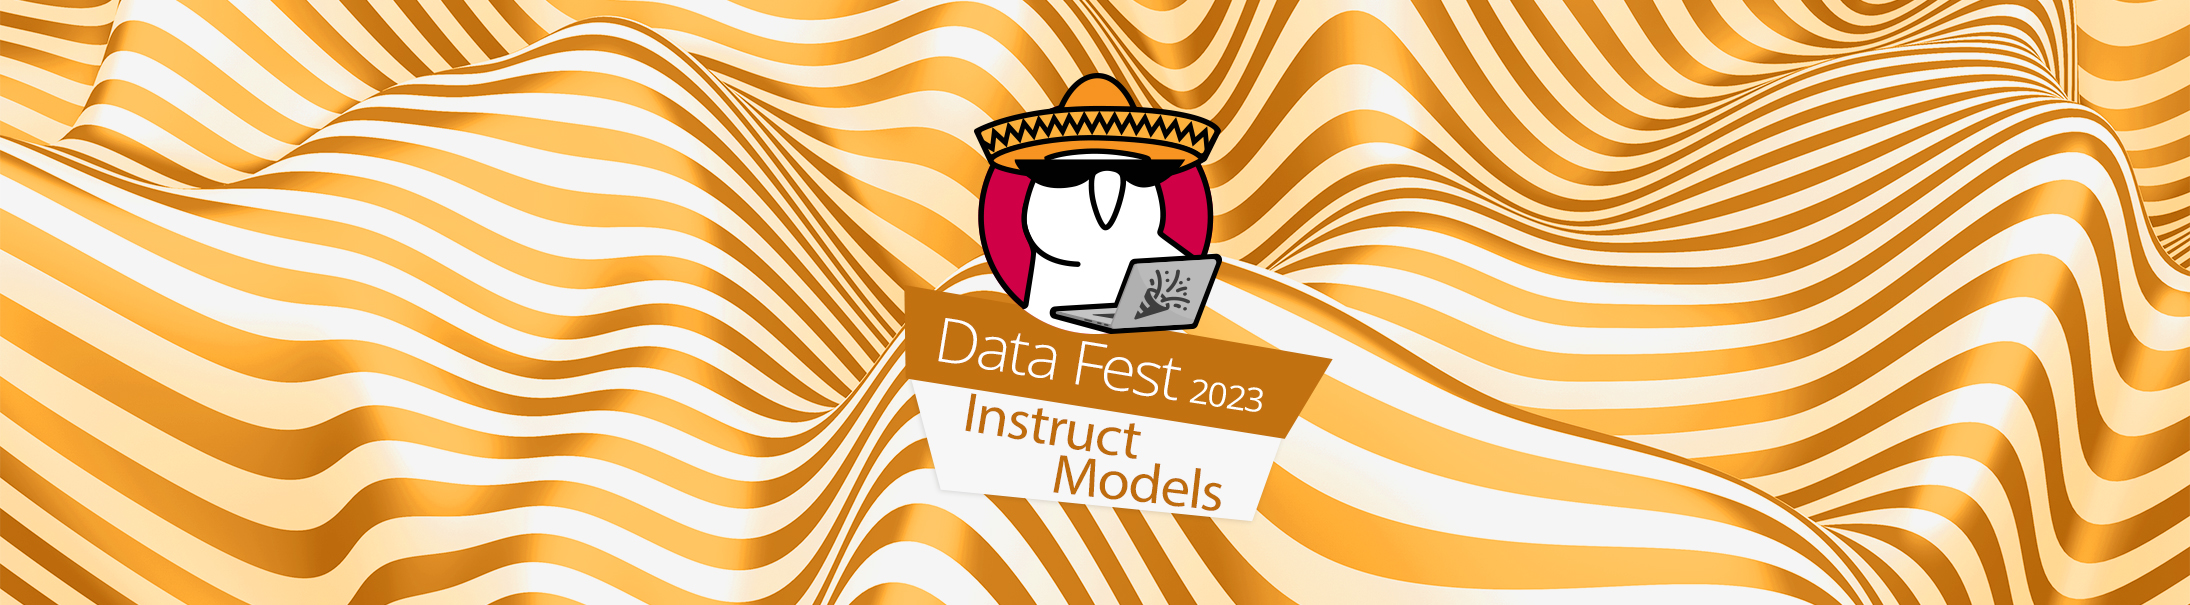 Instruct Models (Data Fest 2023)